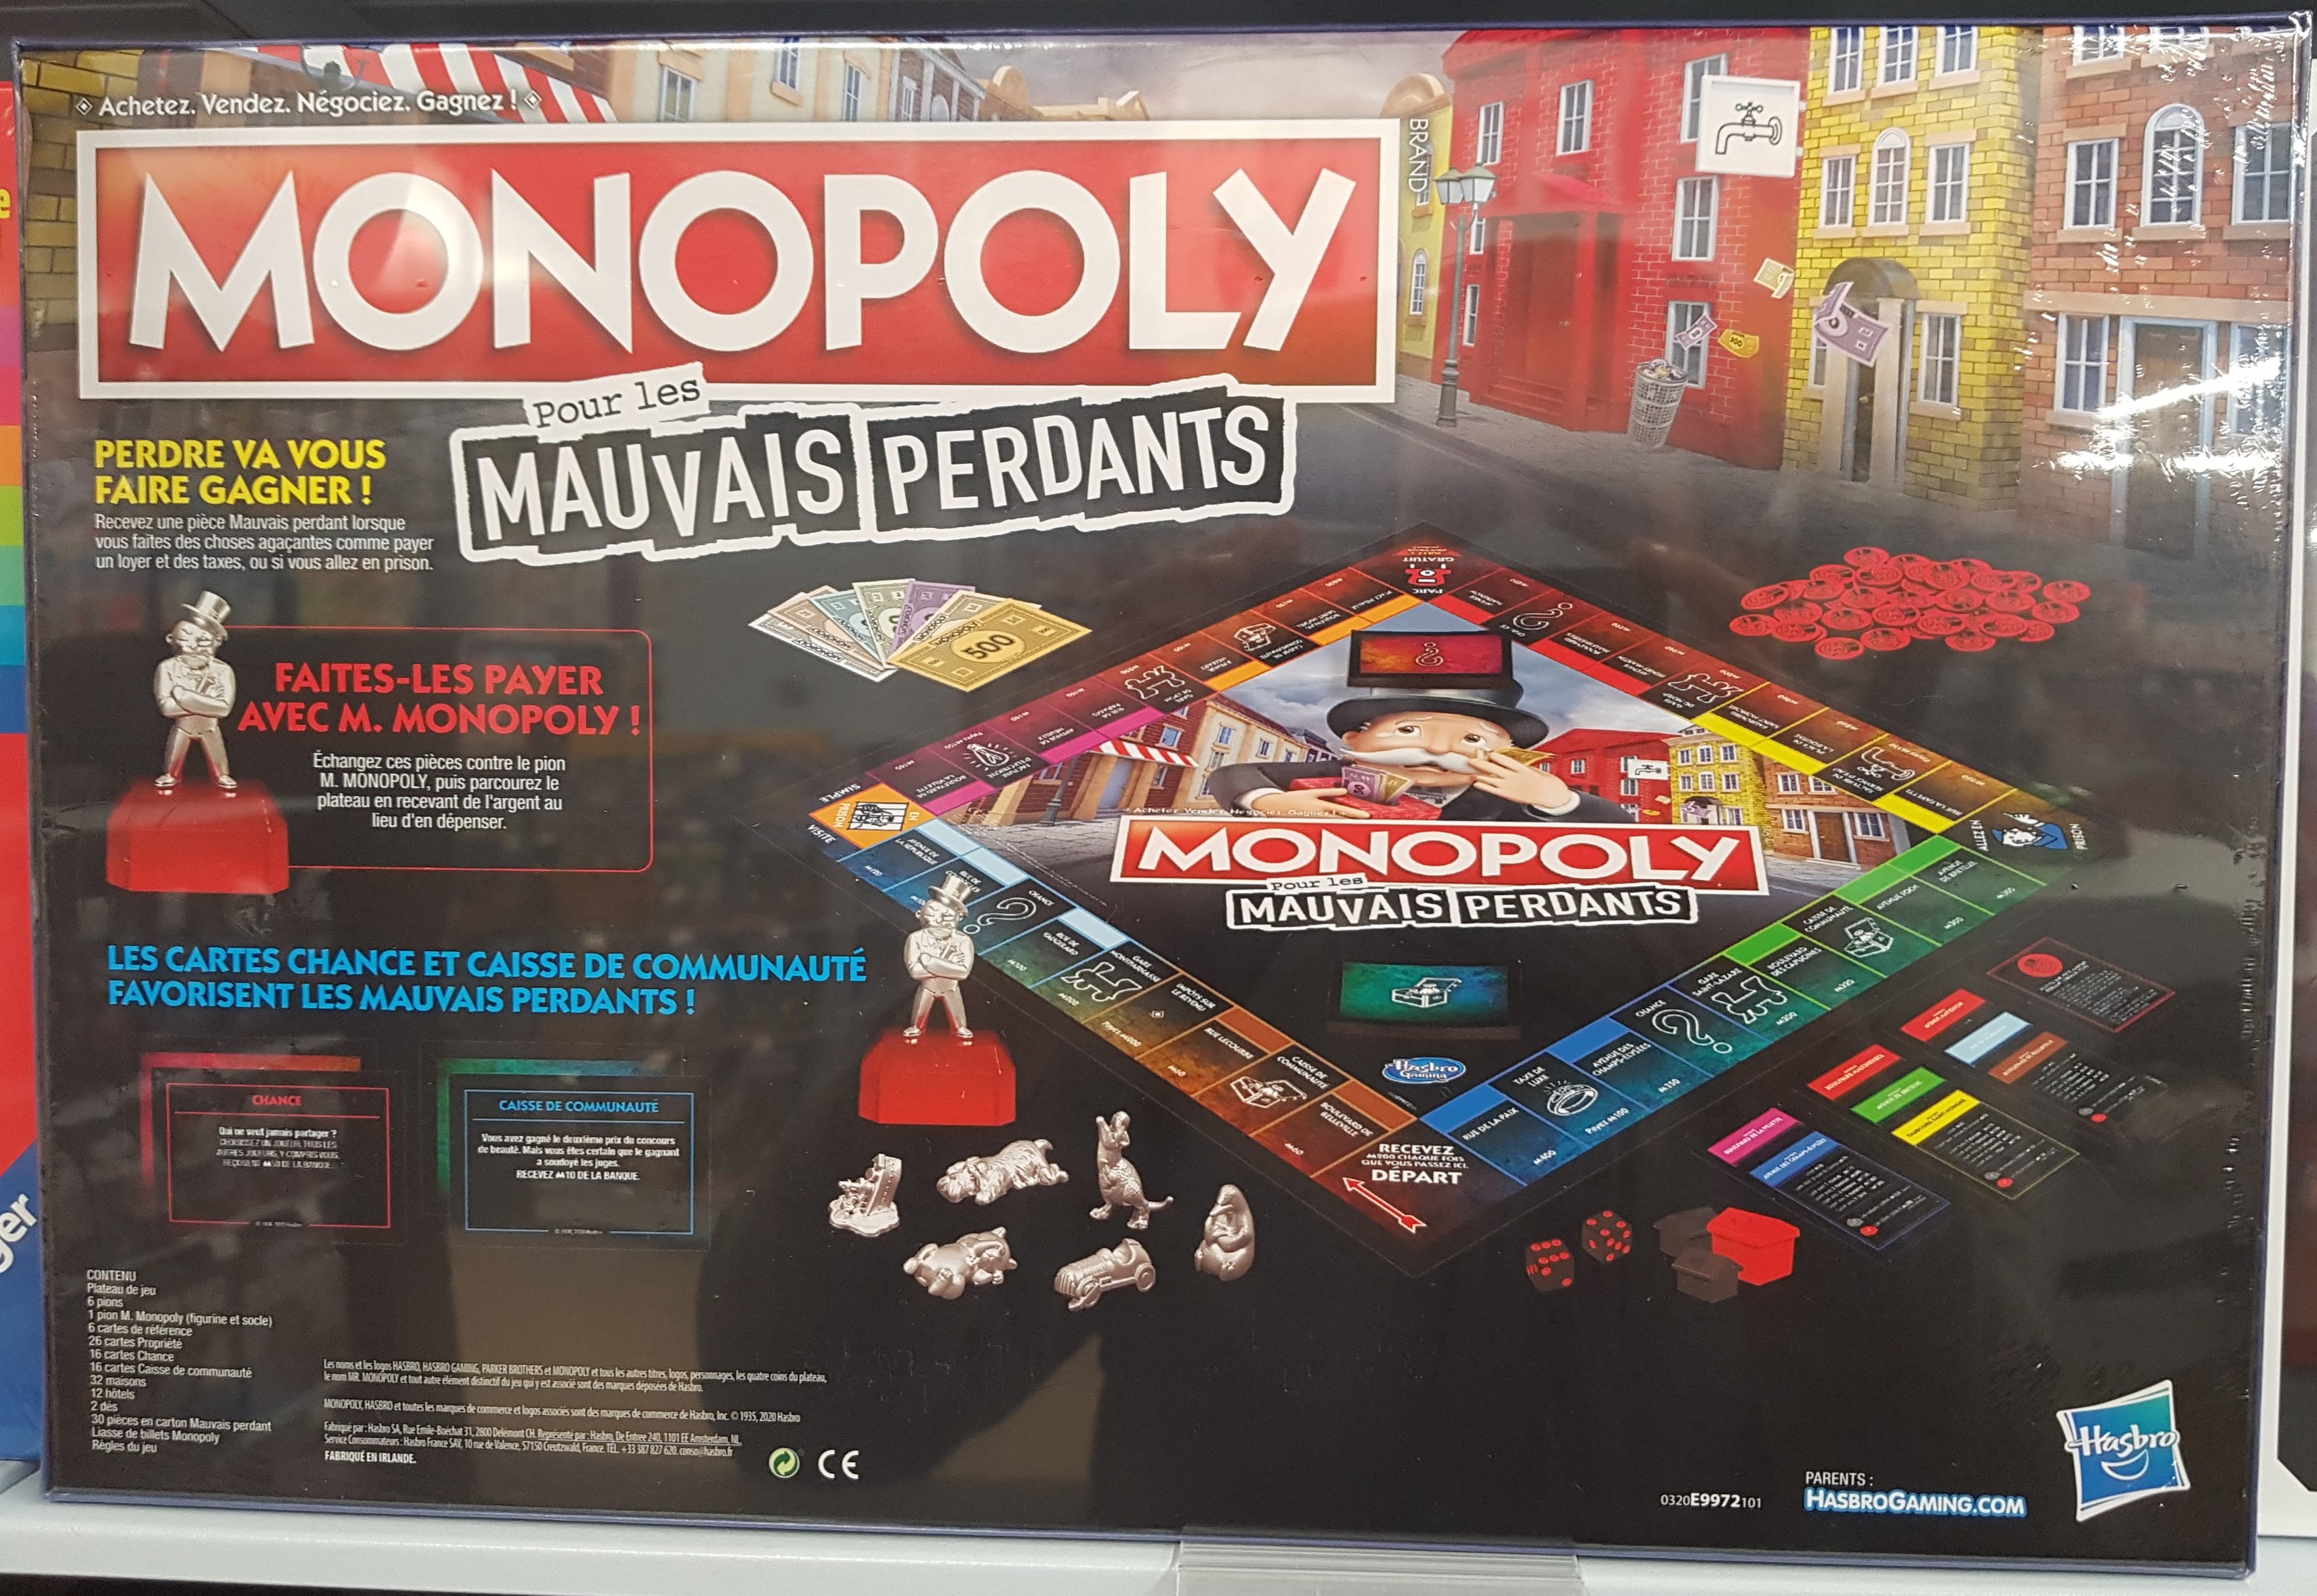 Plateau de jeu pièce détachée monopoly édition tricheurs hasbro gaming